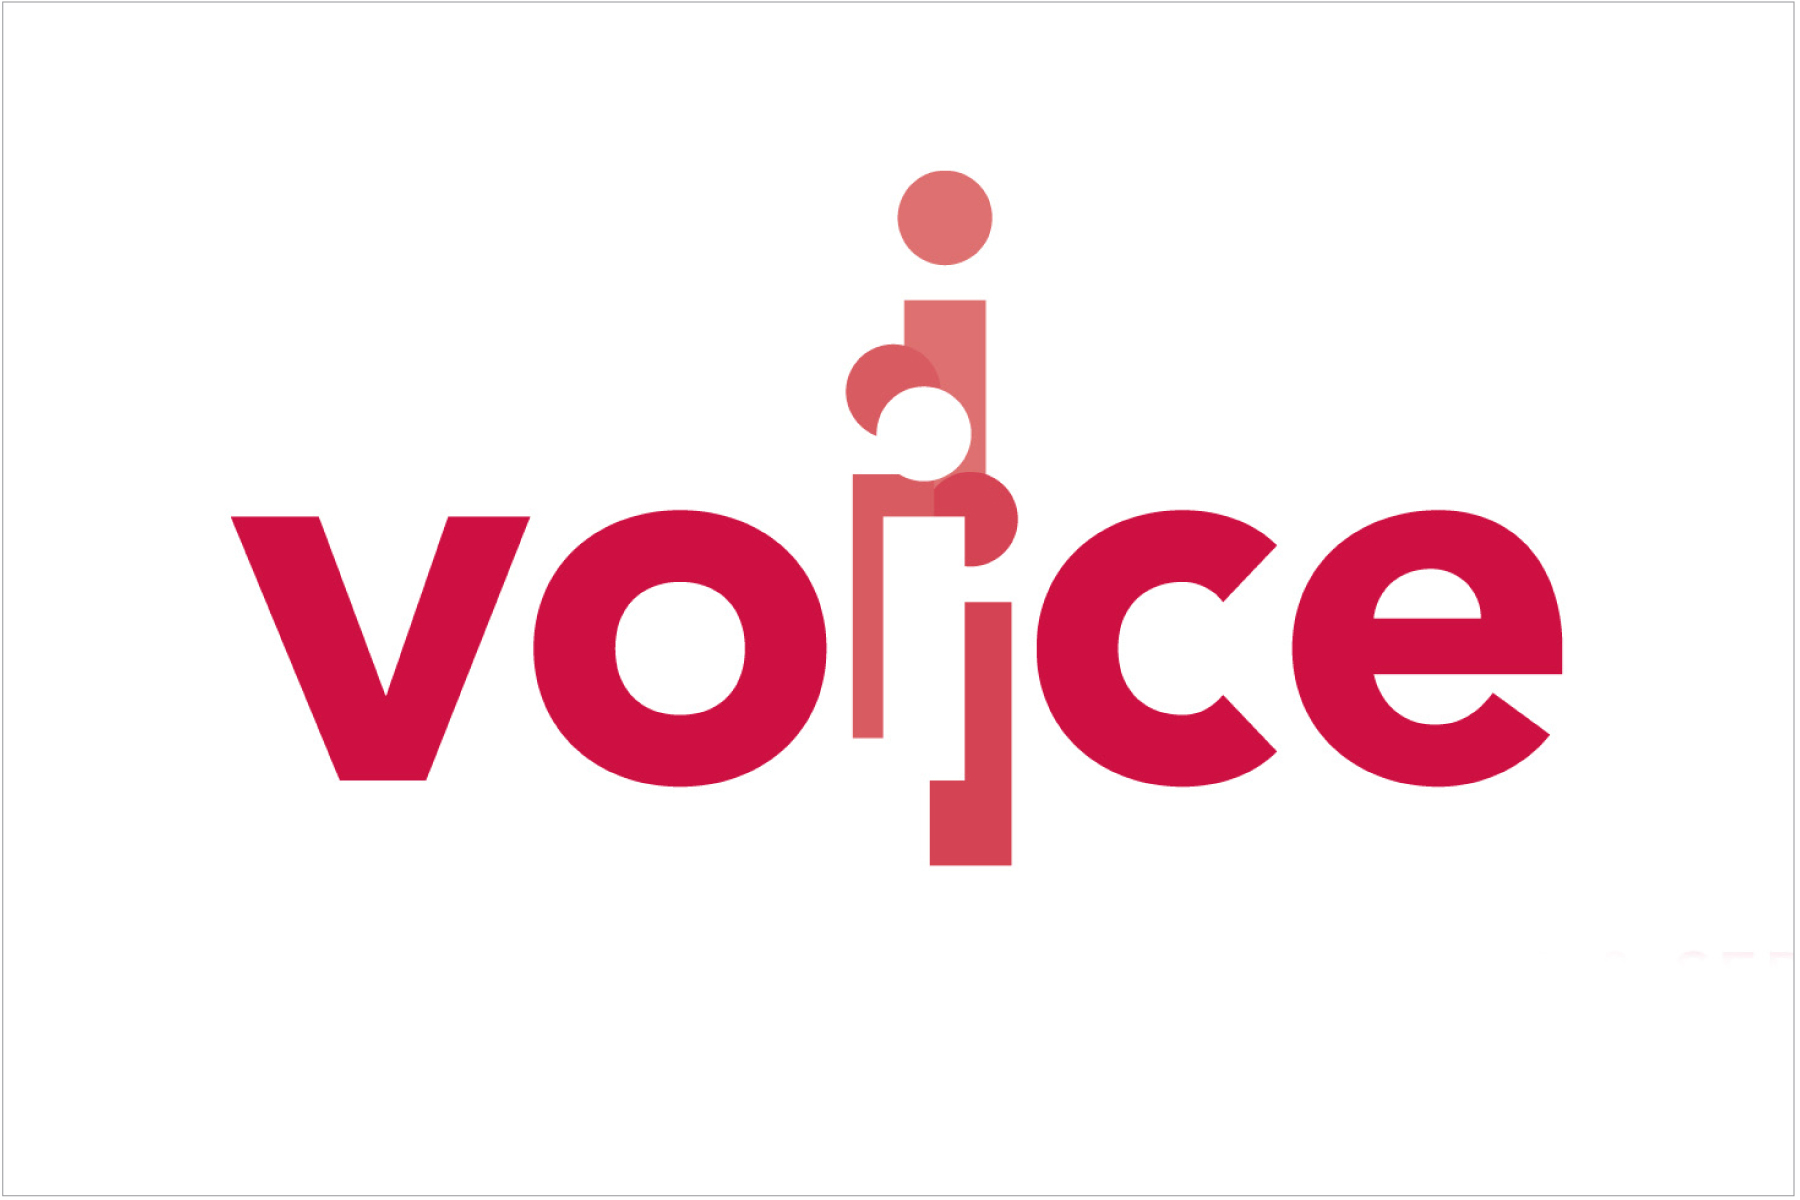 Voice aloud. Voice надпись. Voicу лого. The Voices. The Voice mag логотип.